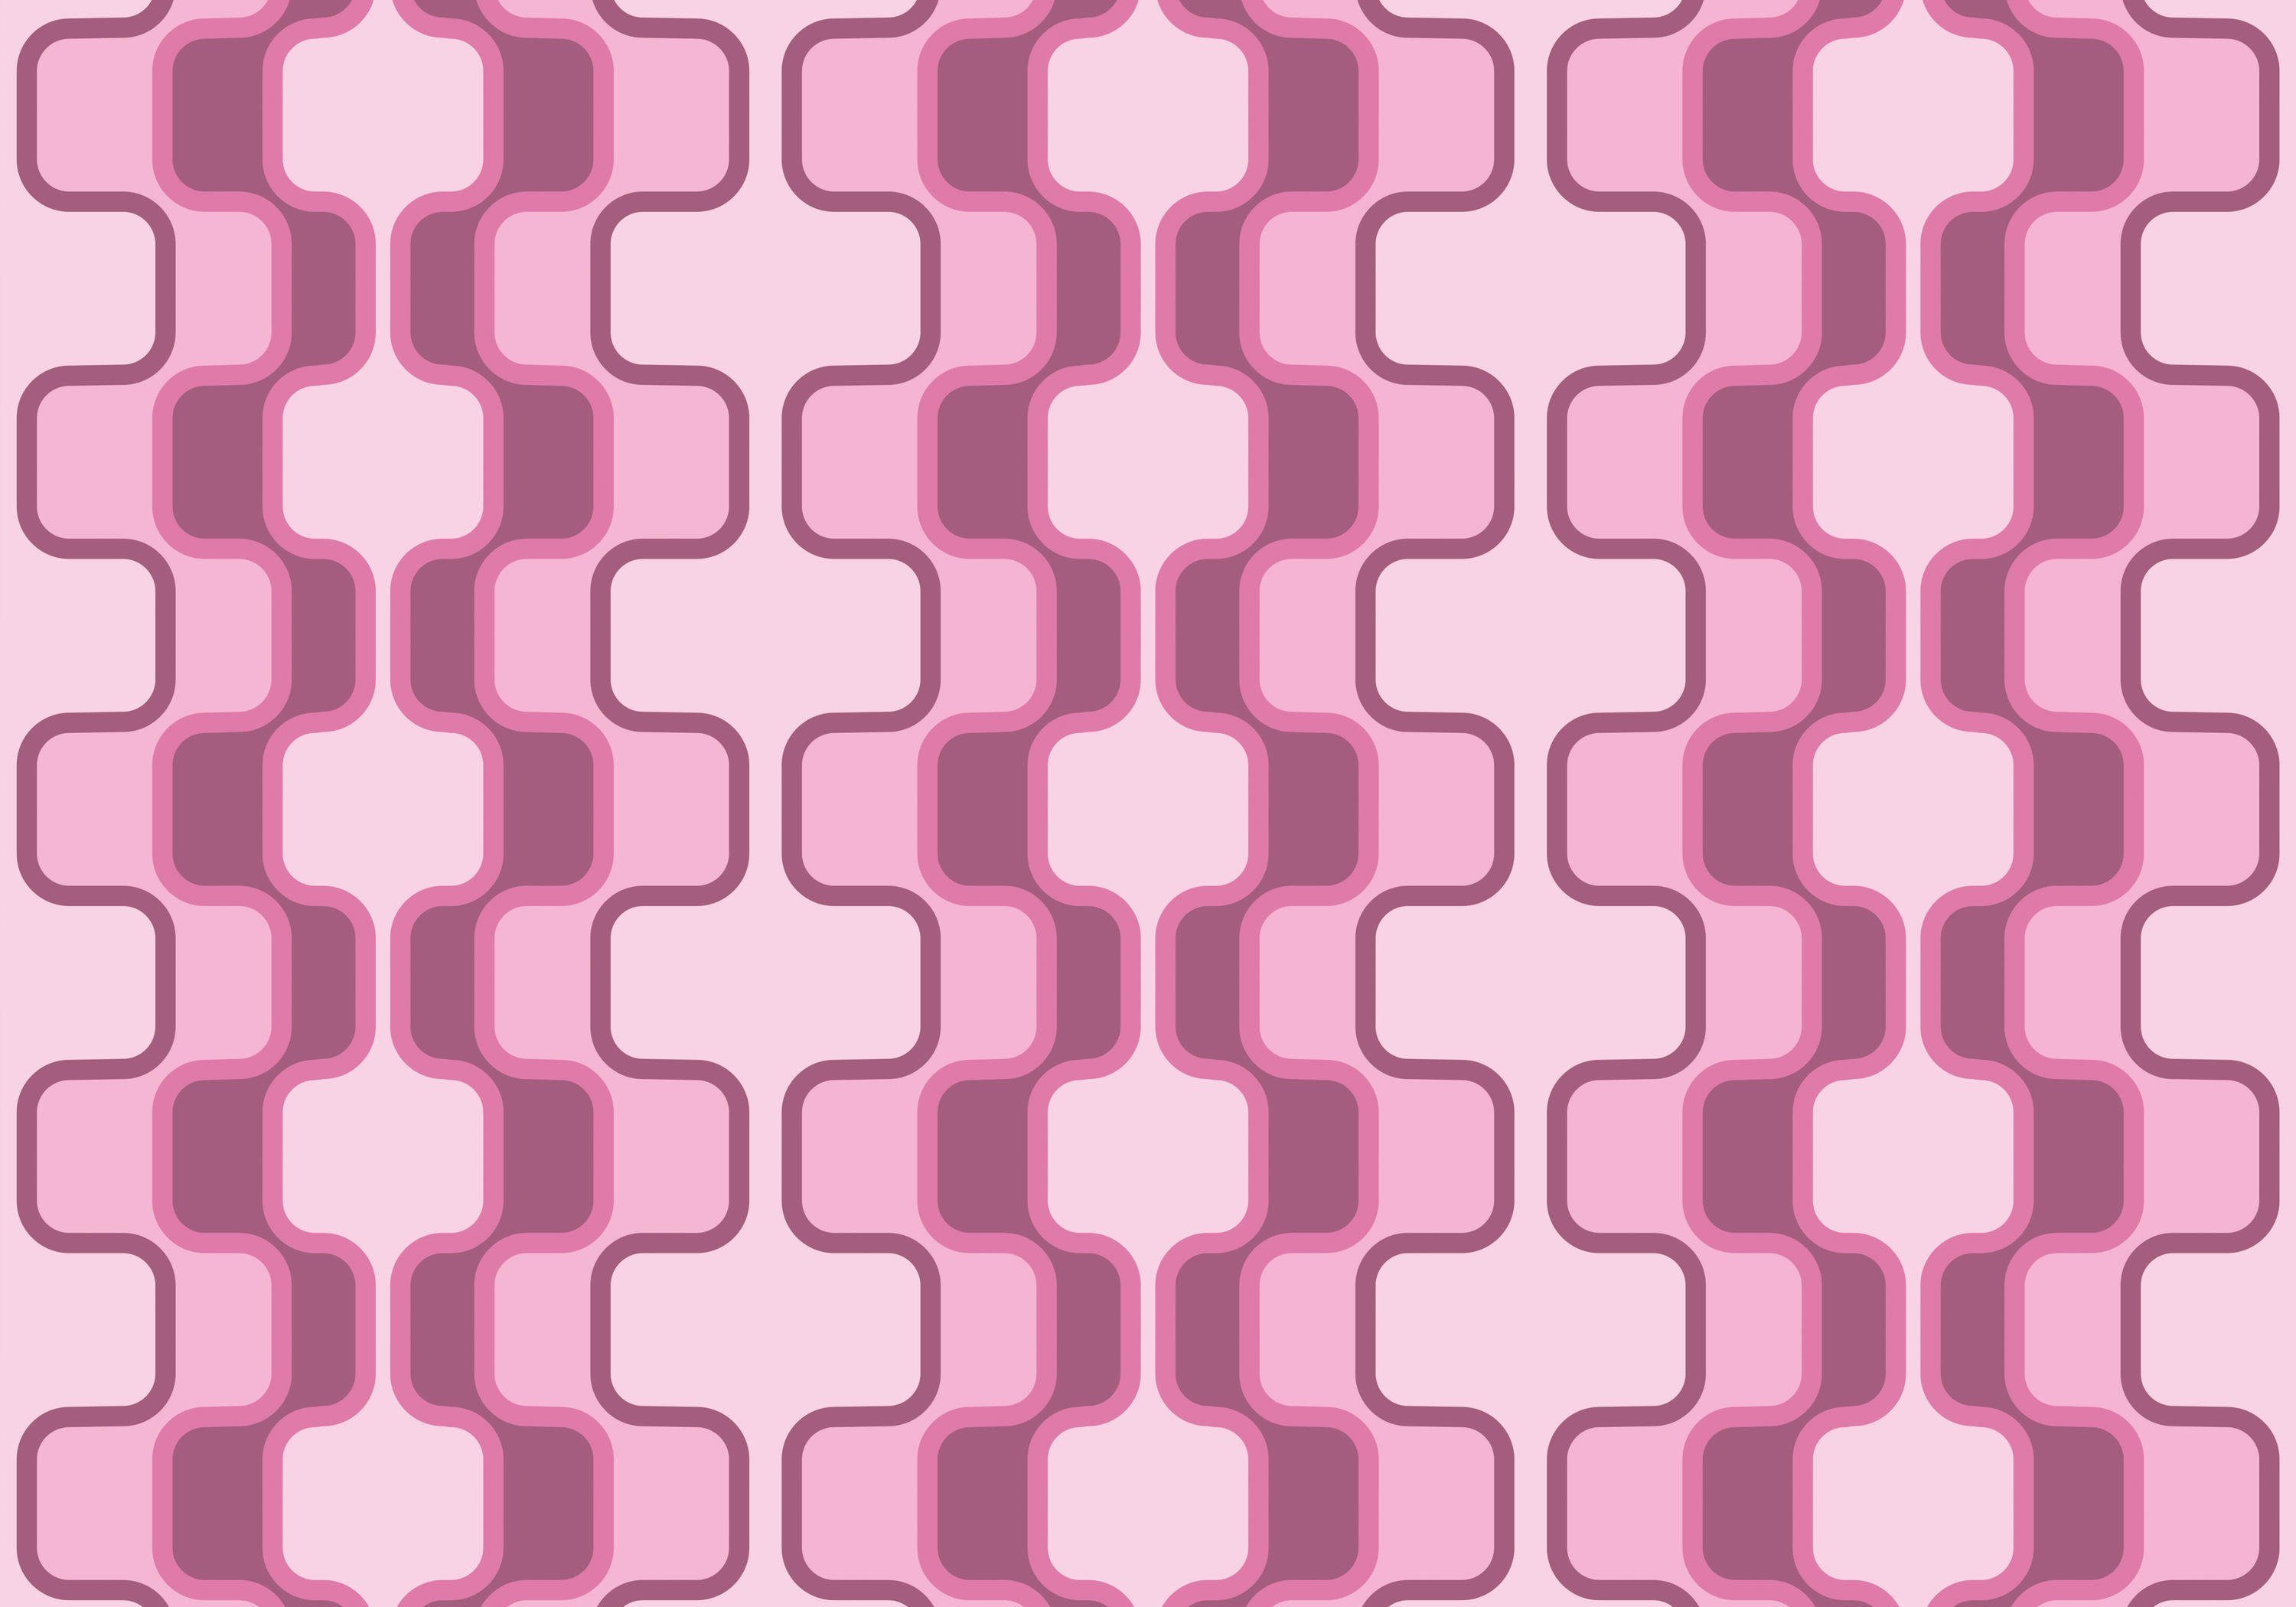 wandmotiv24 Fototapete Retromuster Pink Muster, glatt, Wandtapete, Motivtapete, matt, Vliestapete